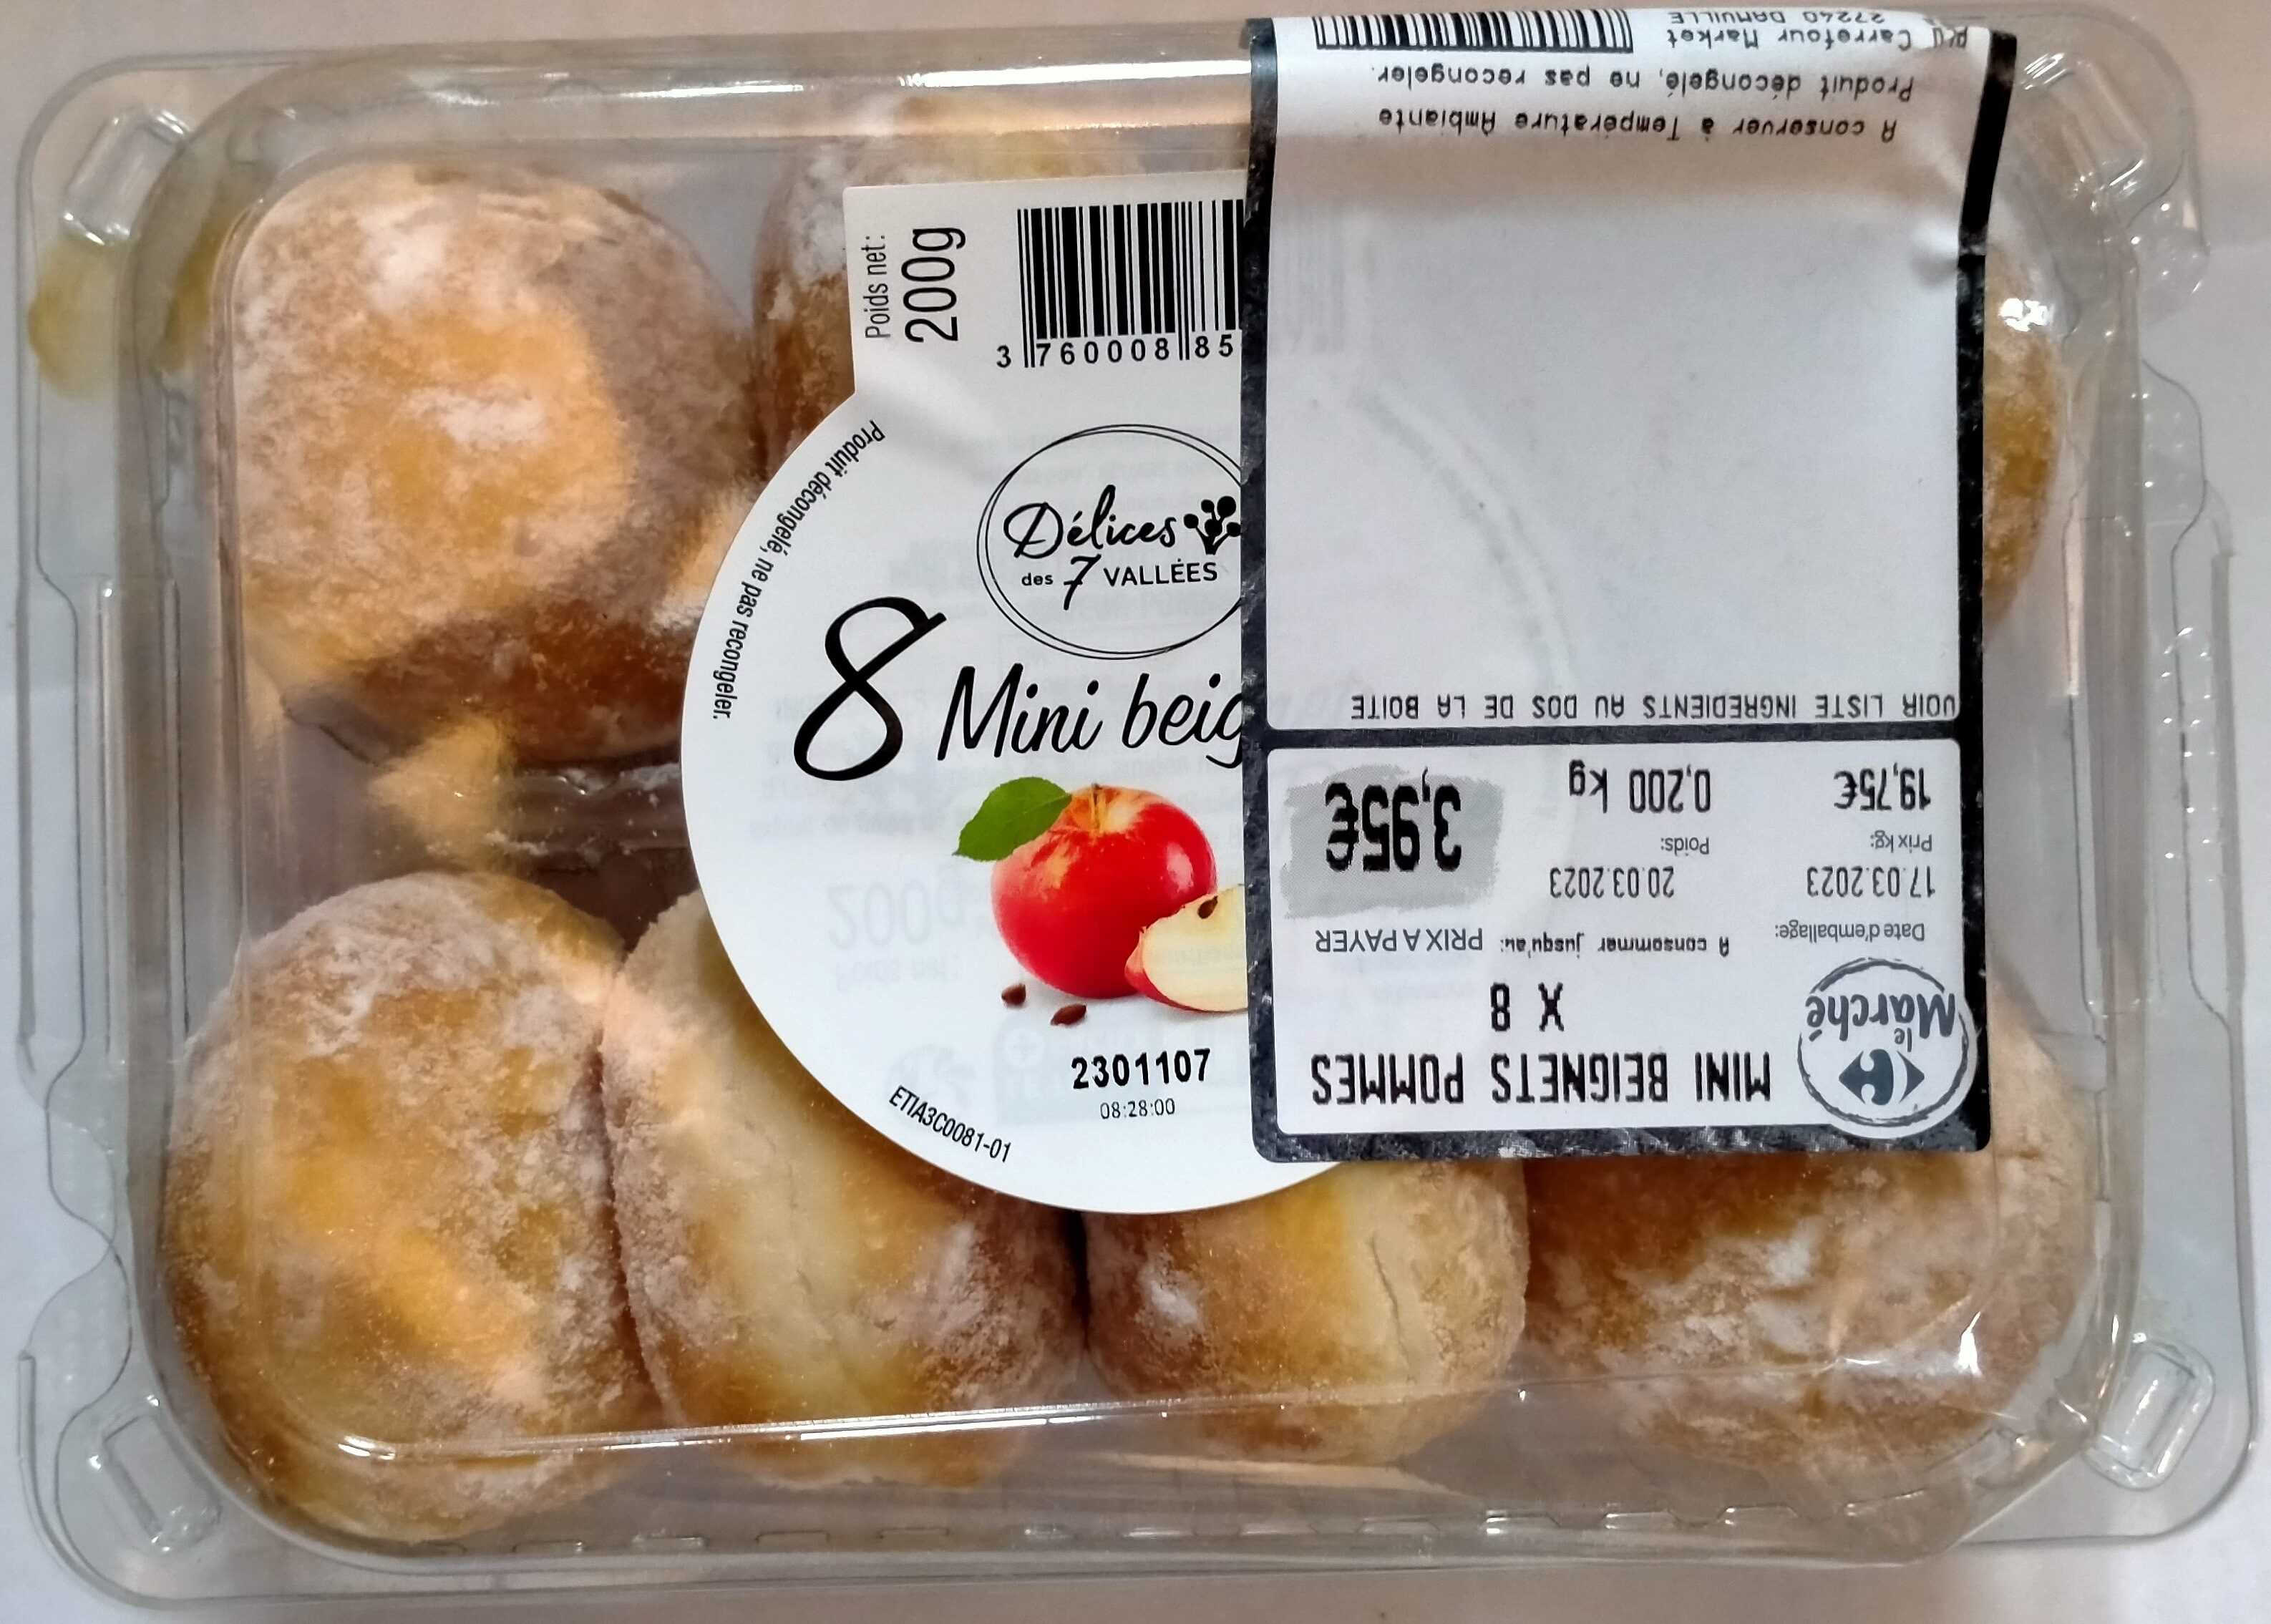 8 mini beignets fourrés aux pommes - Produit